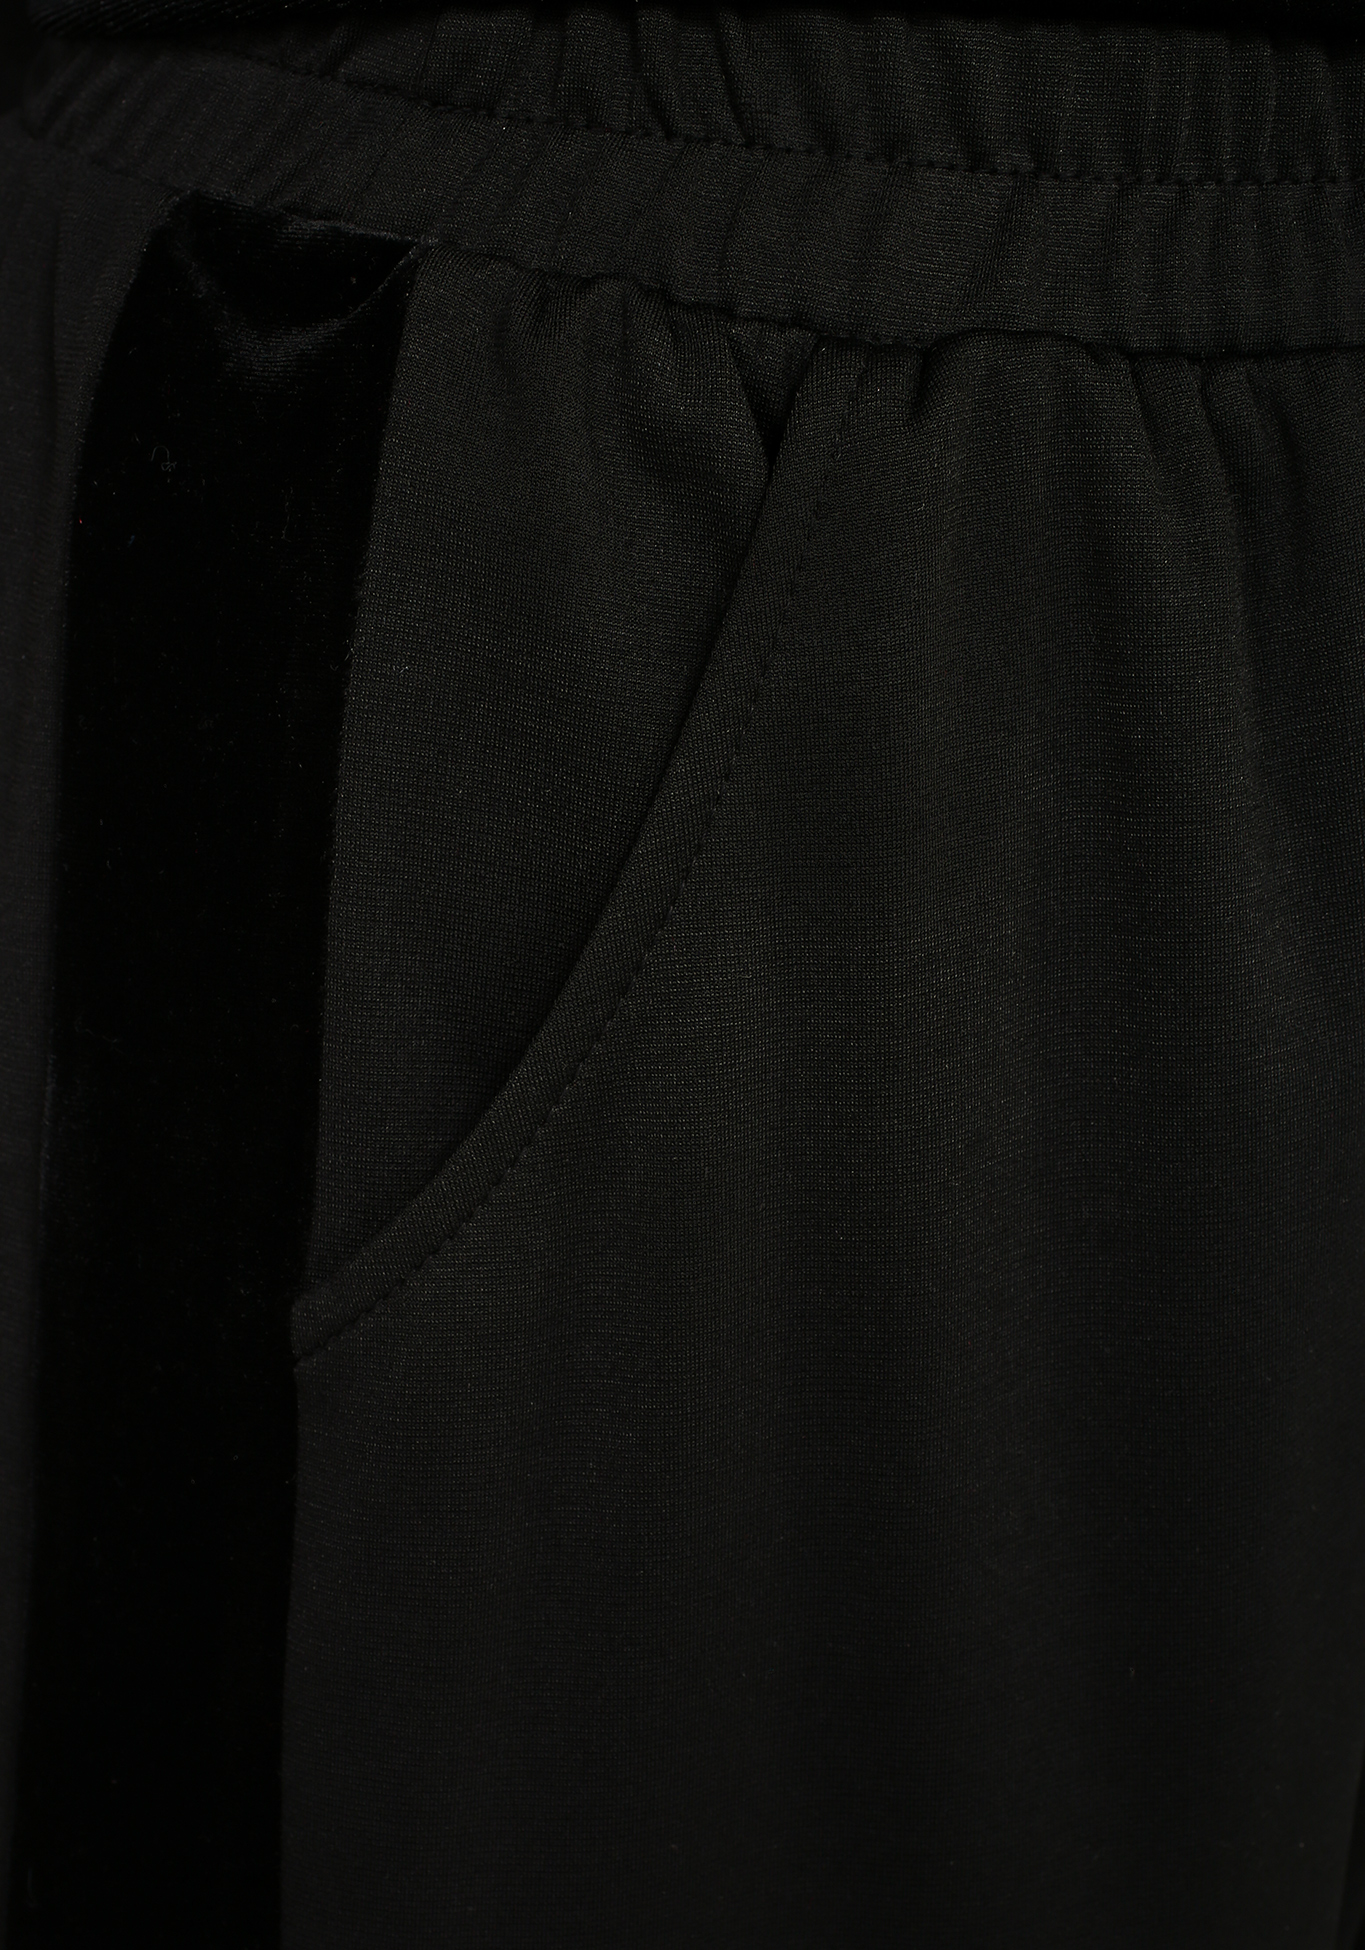 Брюки трикотажные с лампасами из велюра Elletto Life, размер 52, цвет черный - фото 5